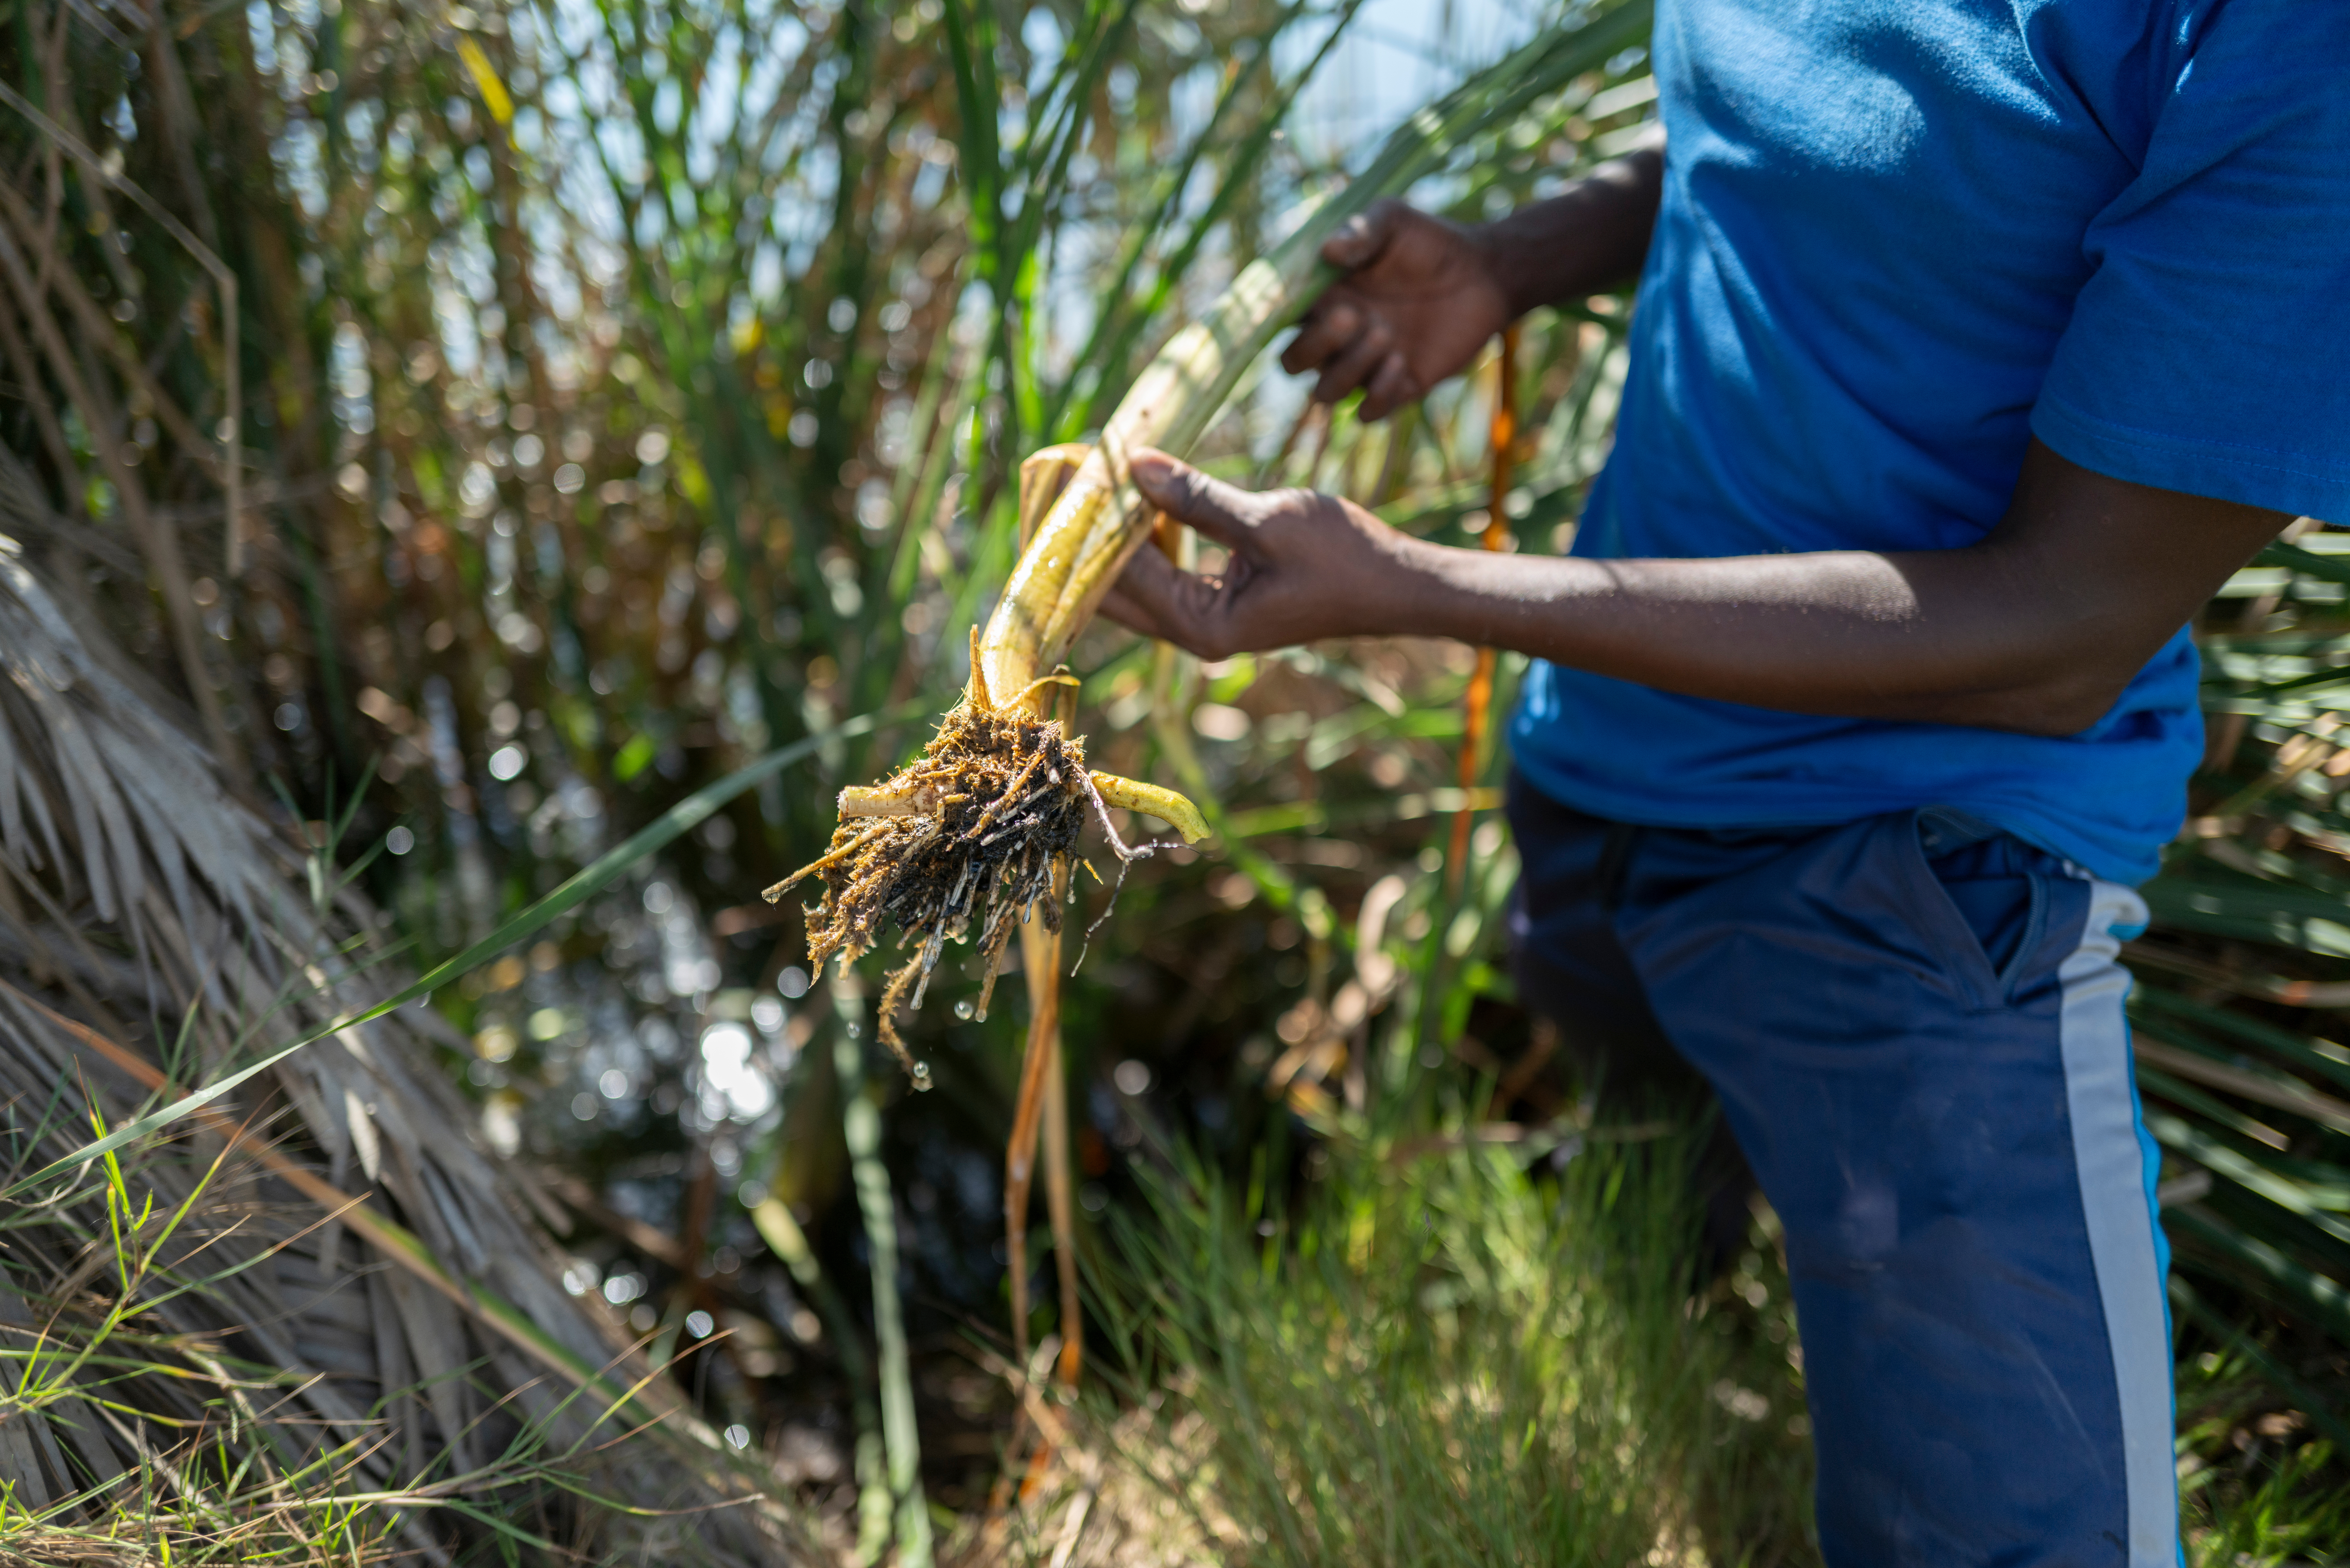 La tifa, una planta invasora, amenaza la supervivencia de la reserva natural urbana de Niayes, en Pikine, y hay planes para utilizarla como aislante para las casas o carbón para cocinar. Pikine (Senégal) ©AECID/Sylvain Cherkaoui 